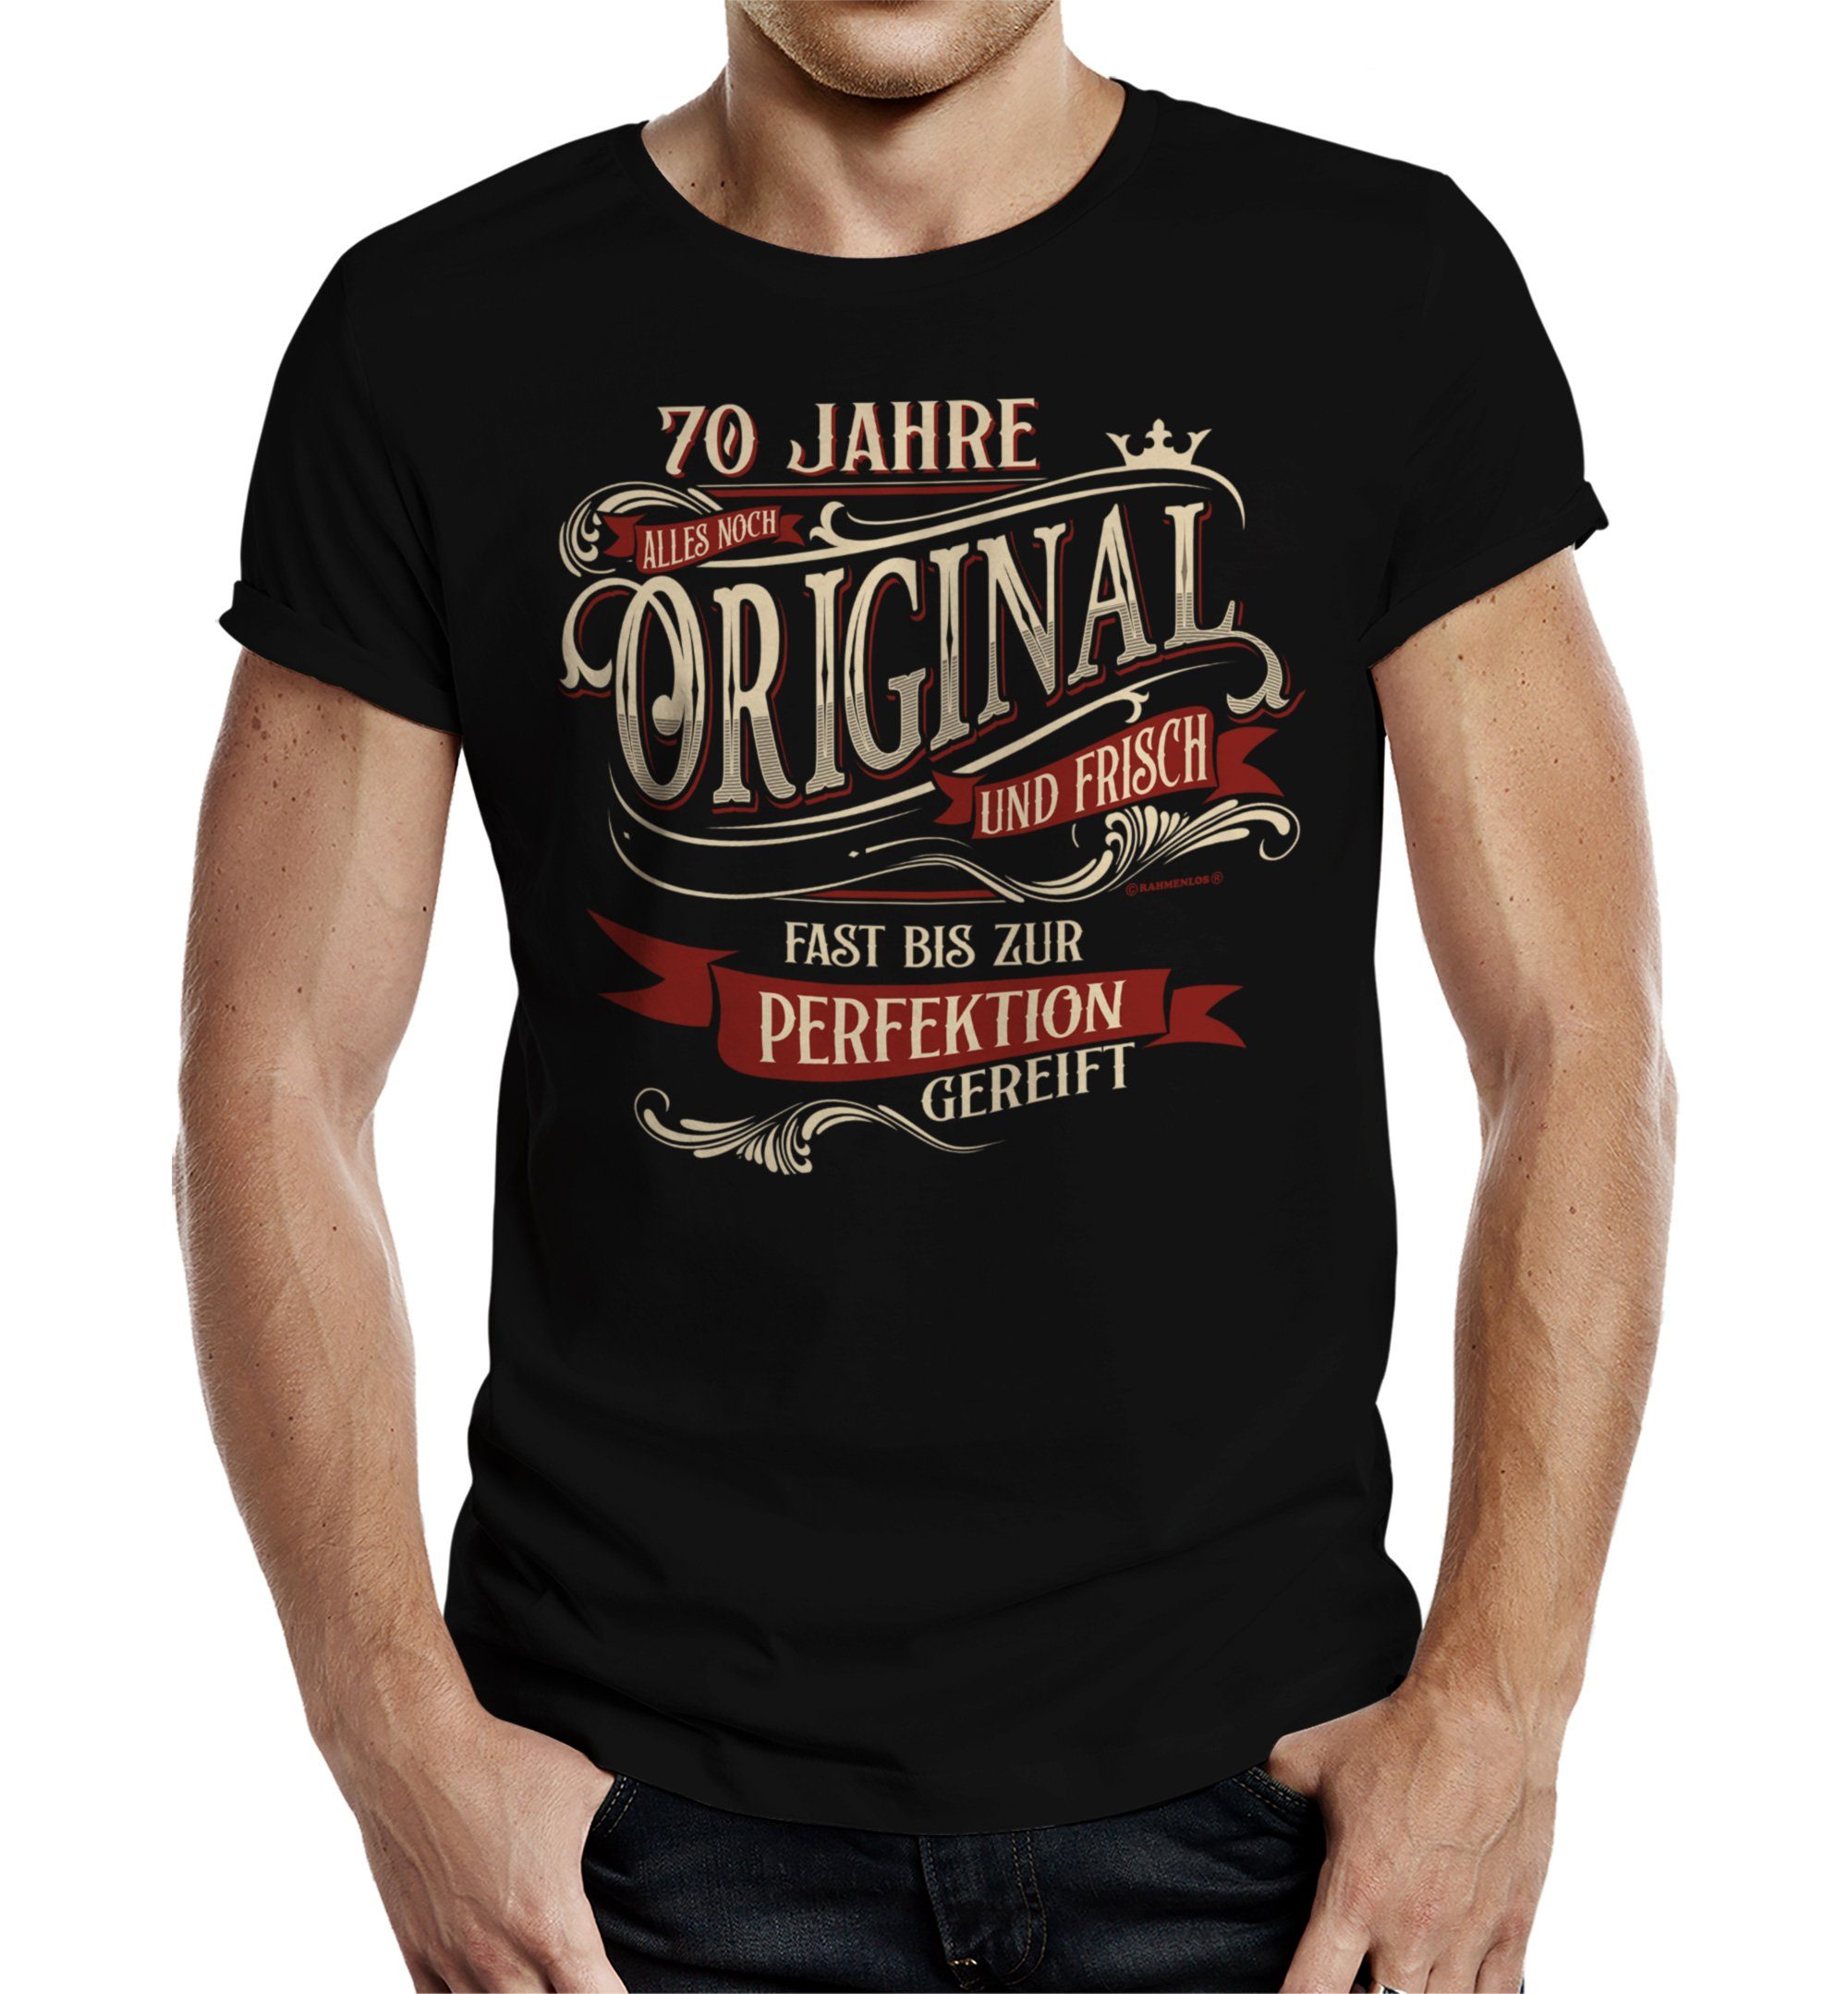 Rahmenlos T-Shirt als Geschenk zum 70. Geburtstag - alles noch original und frisch